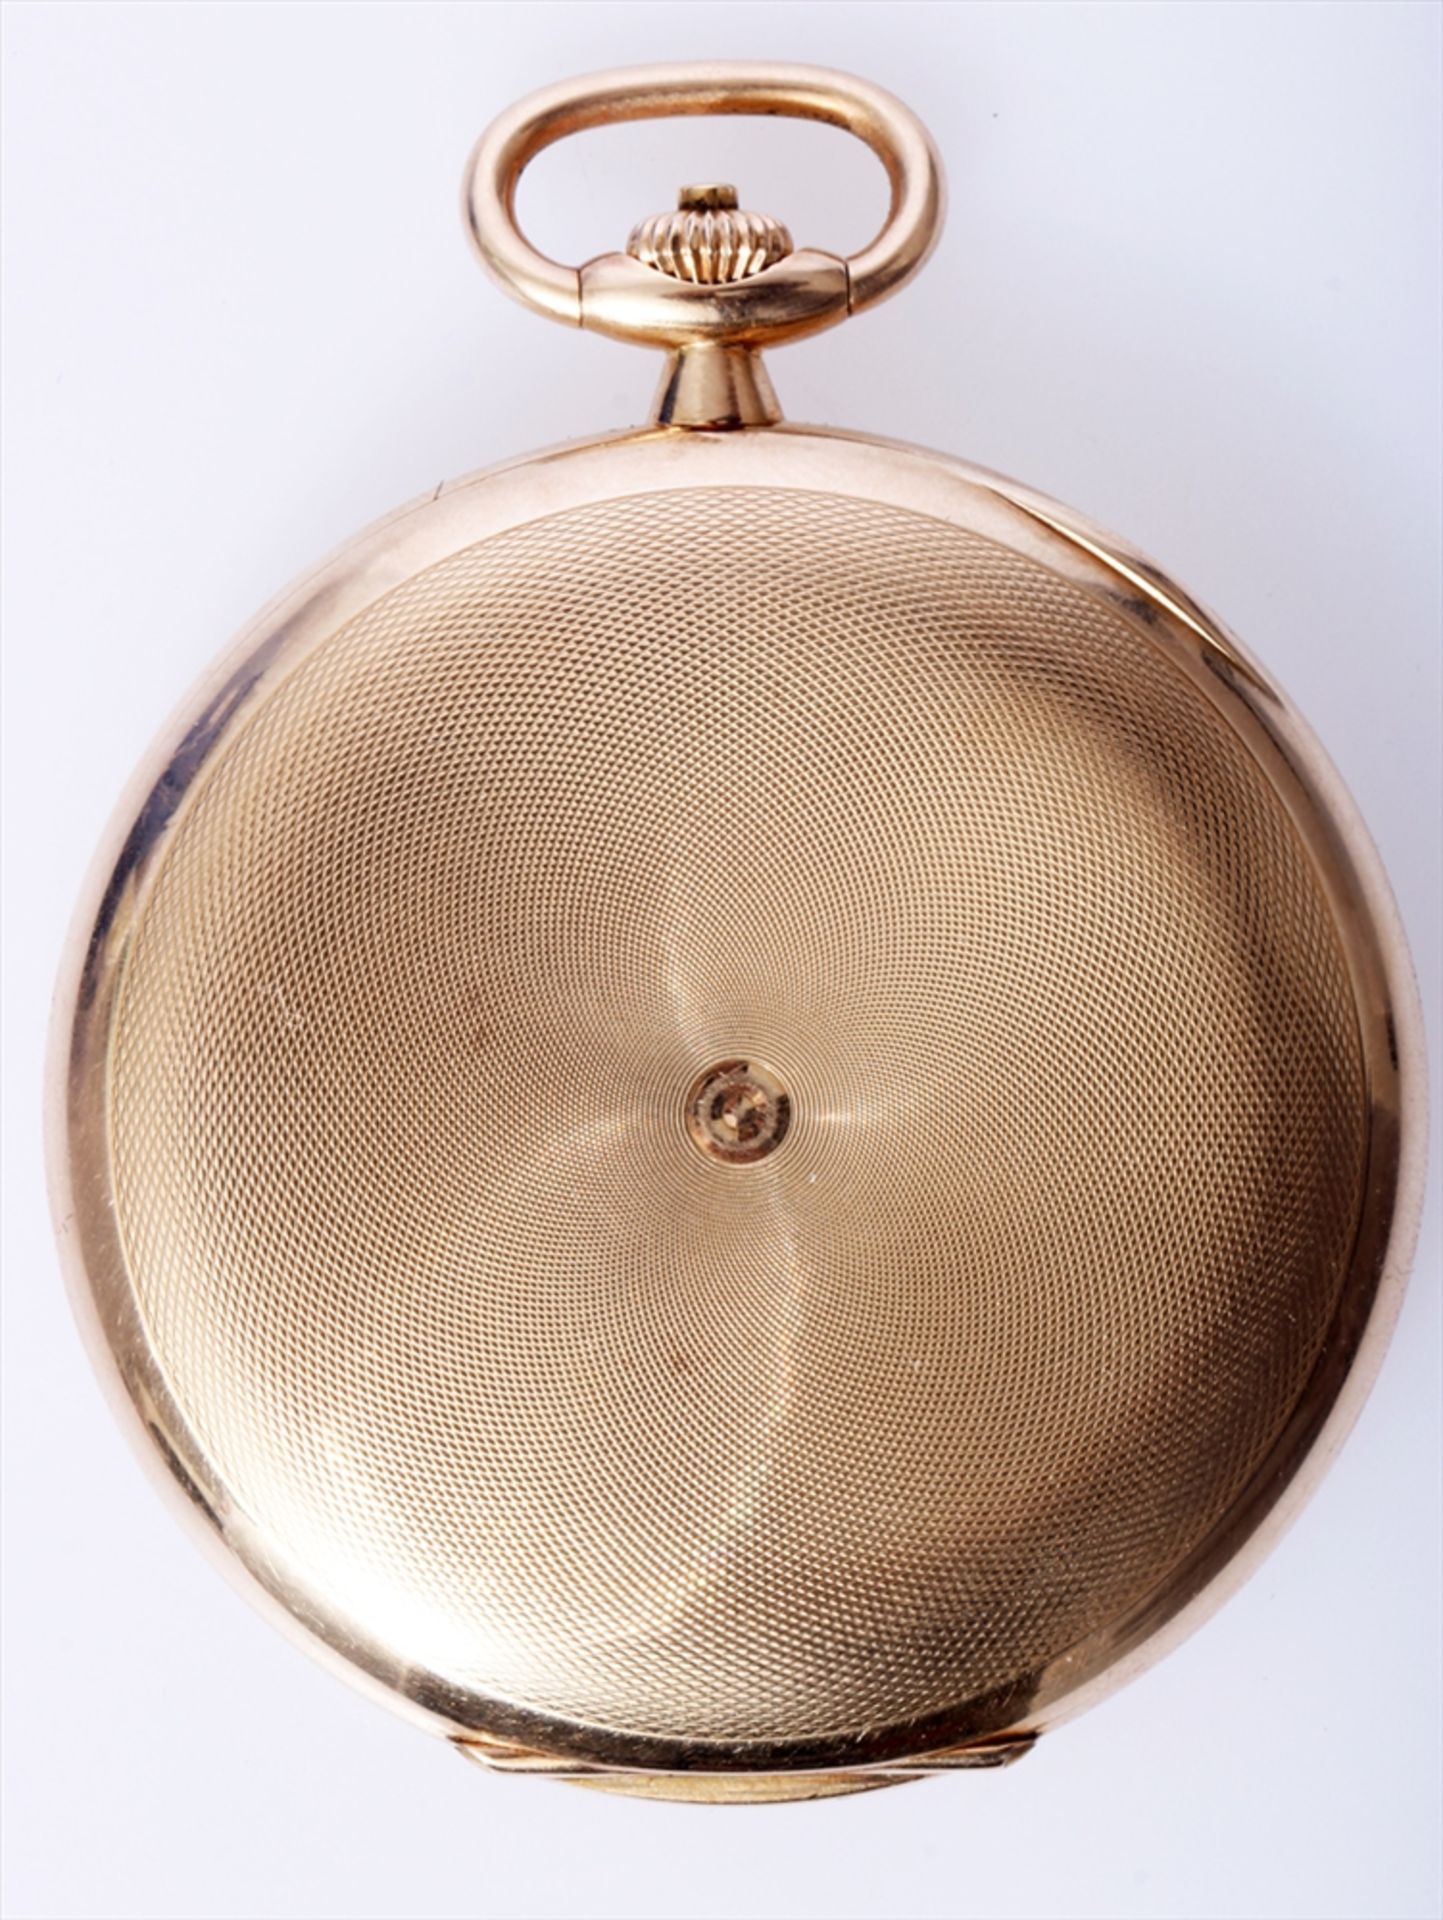 Savonette Omega, 585 Gold, 101,20 Gramm, 3 Deckel Gold, Werknummer aus 1923, Kaliber 18 SPB, - Bild 2 aus 12